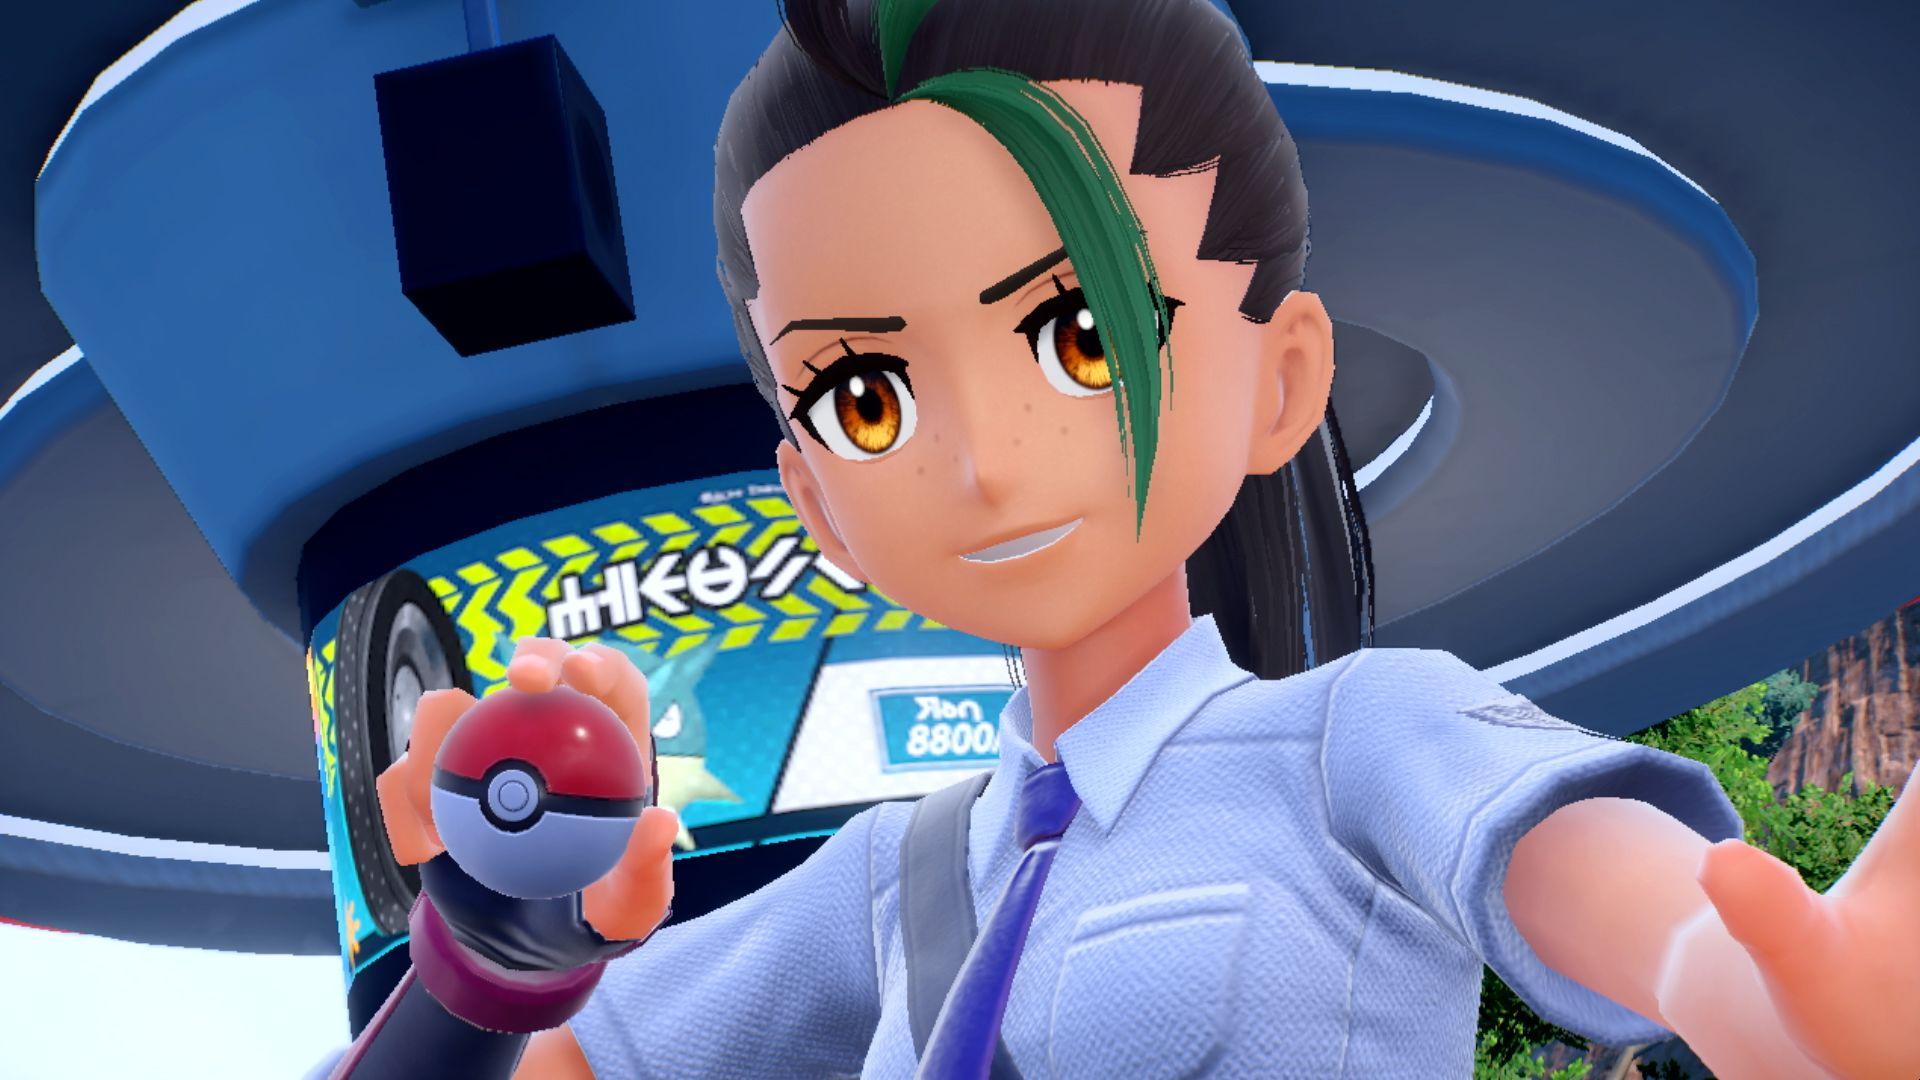 Nintendo España on Twitter: "¡Esta es tu amiga Mencía! Es muy alegre, está  llena de energía y adora los combates Pokémon. Como Entrenadora Pokémon con  experiencia, te guiará en tus aventuras. #EscarlataPurpura